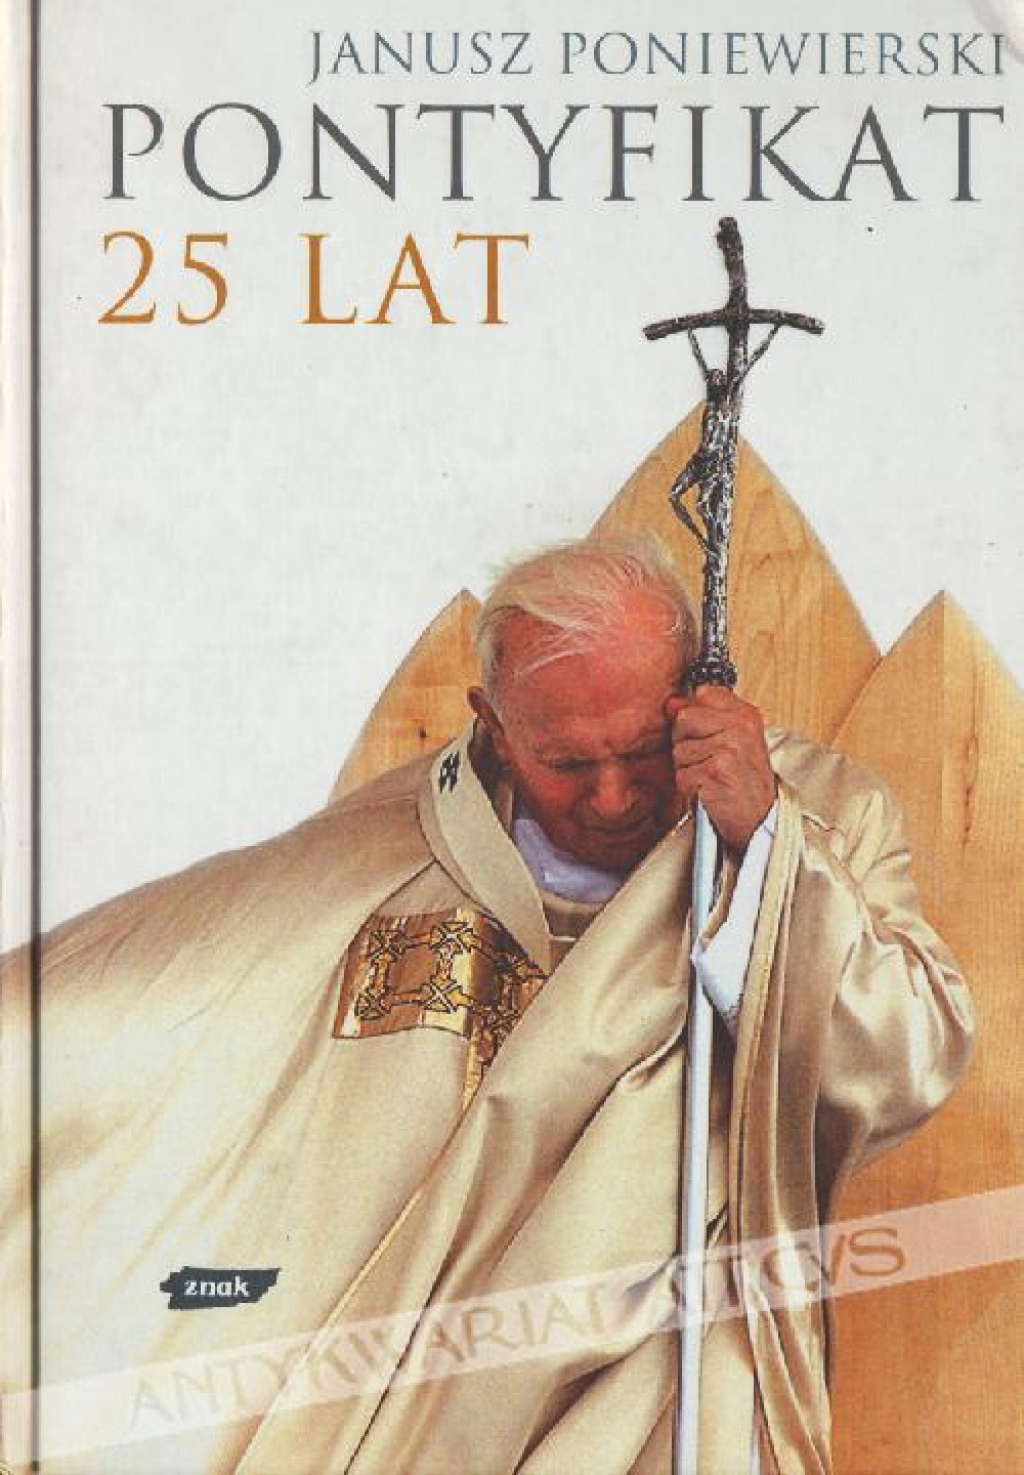 Pontyfikat 25 lat